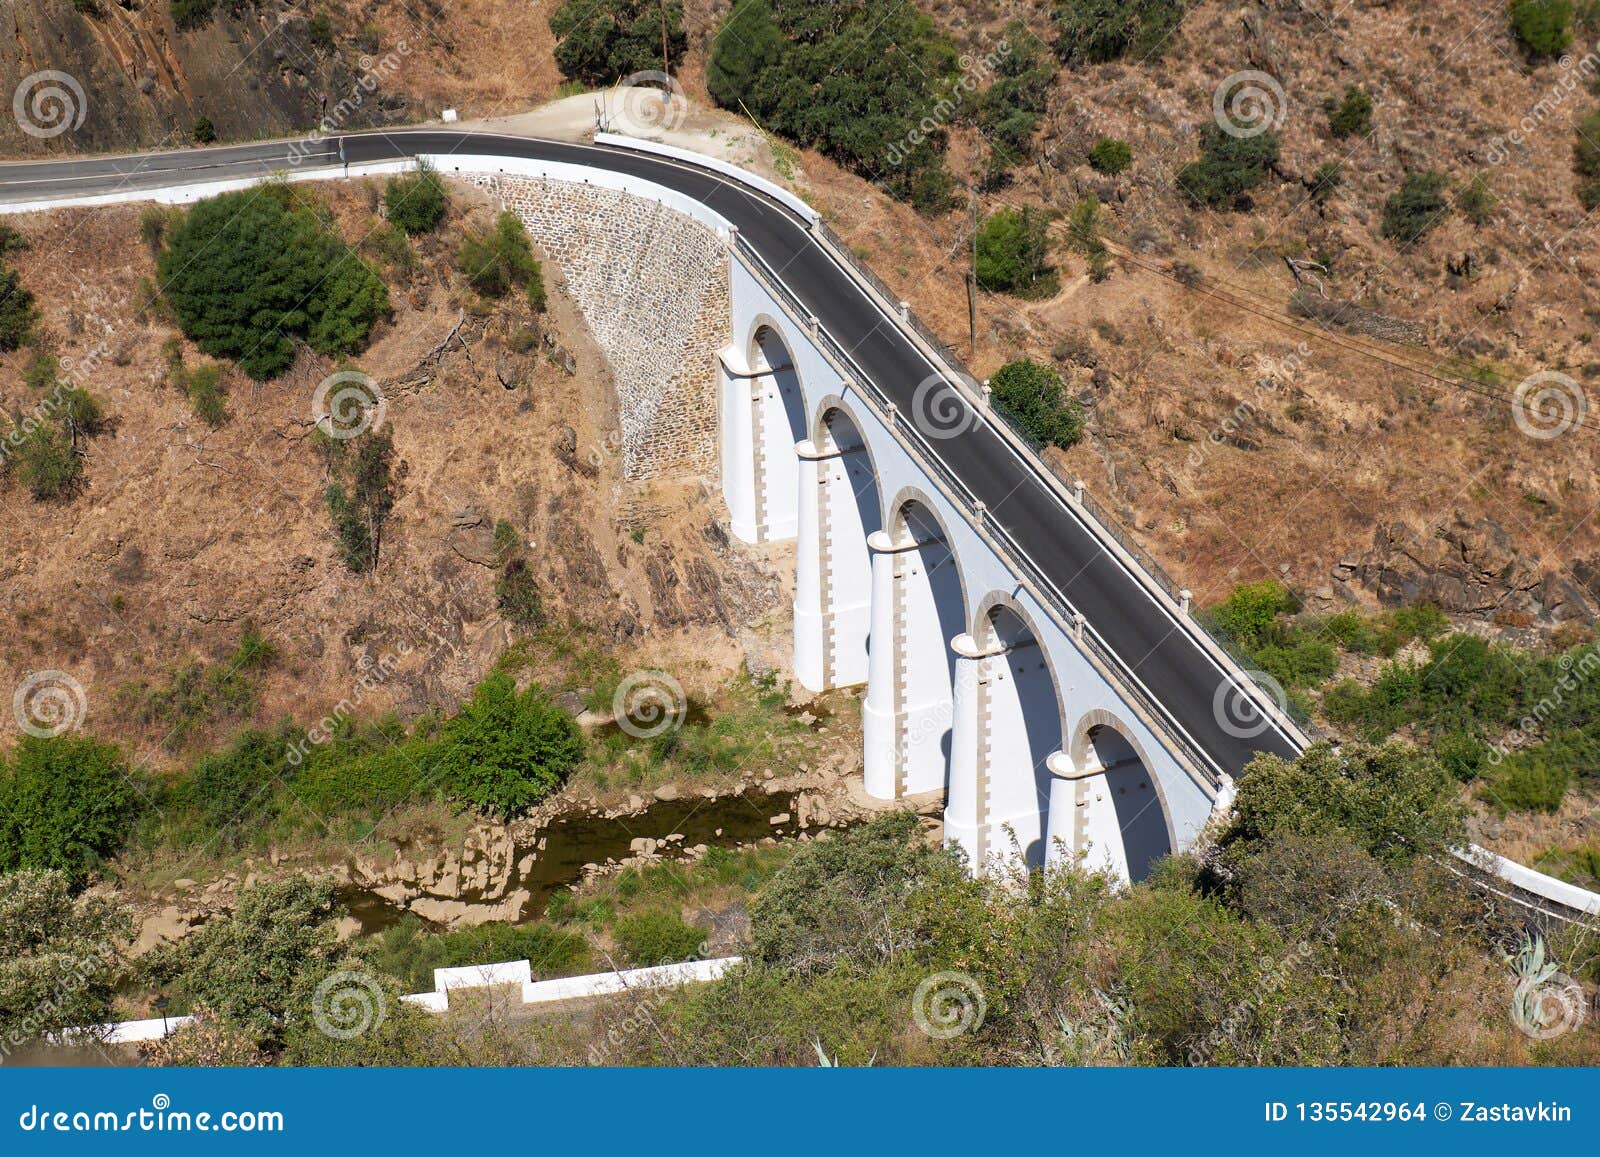 the bridge over oeiras river near mertola city. baixo alentejo. portugal